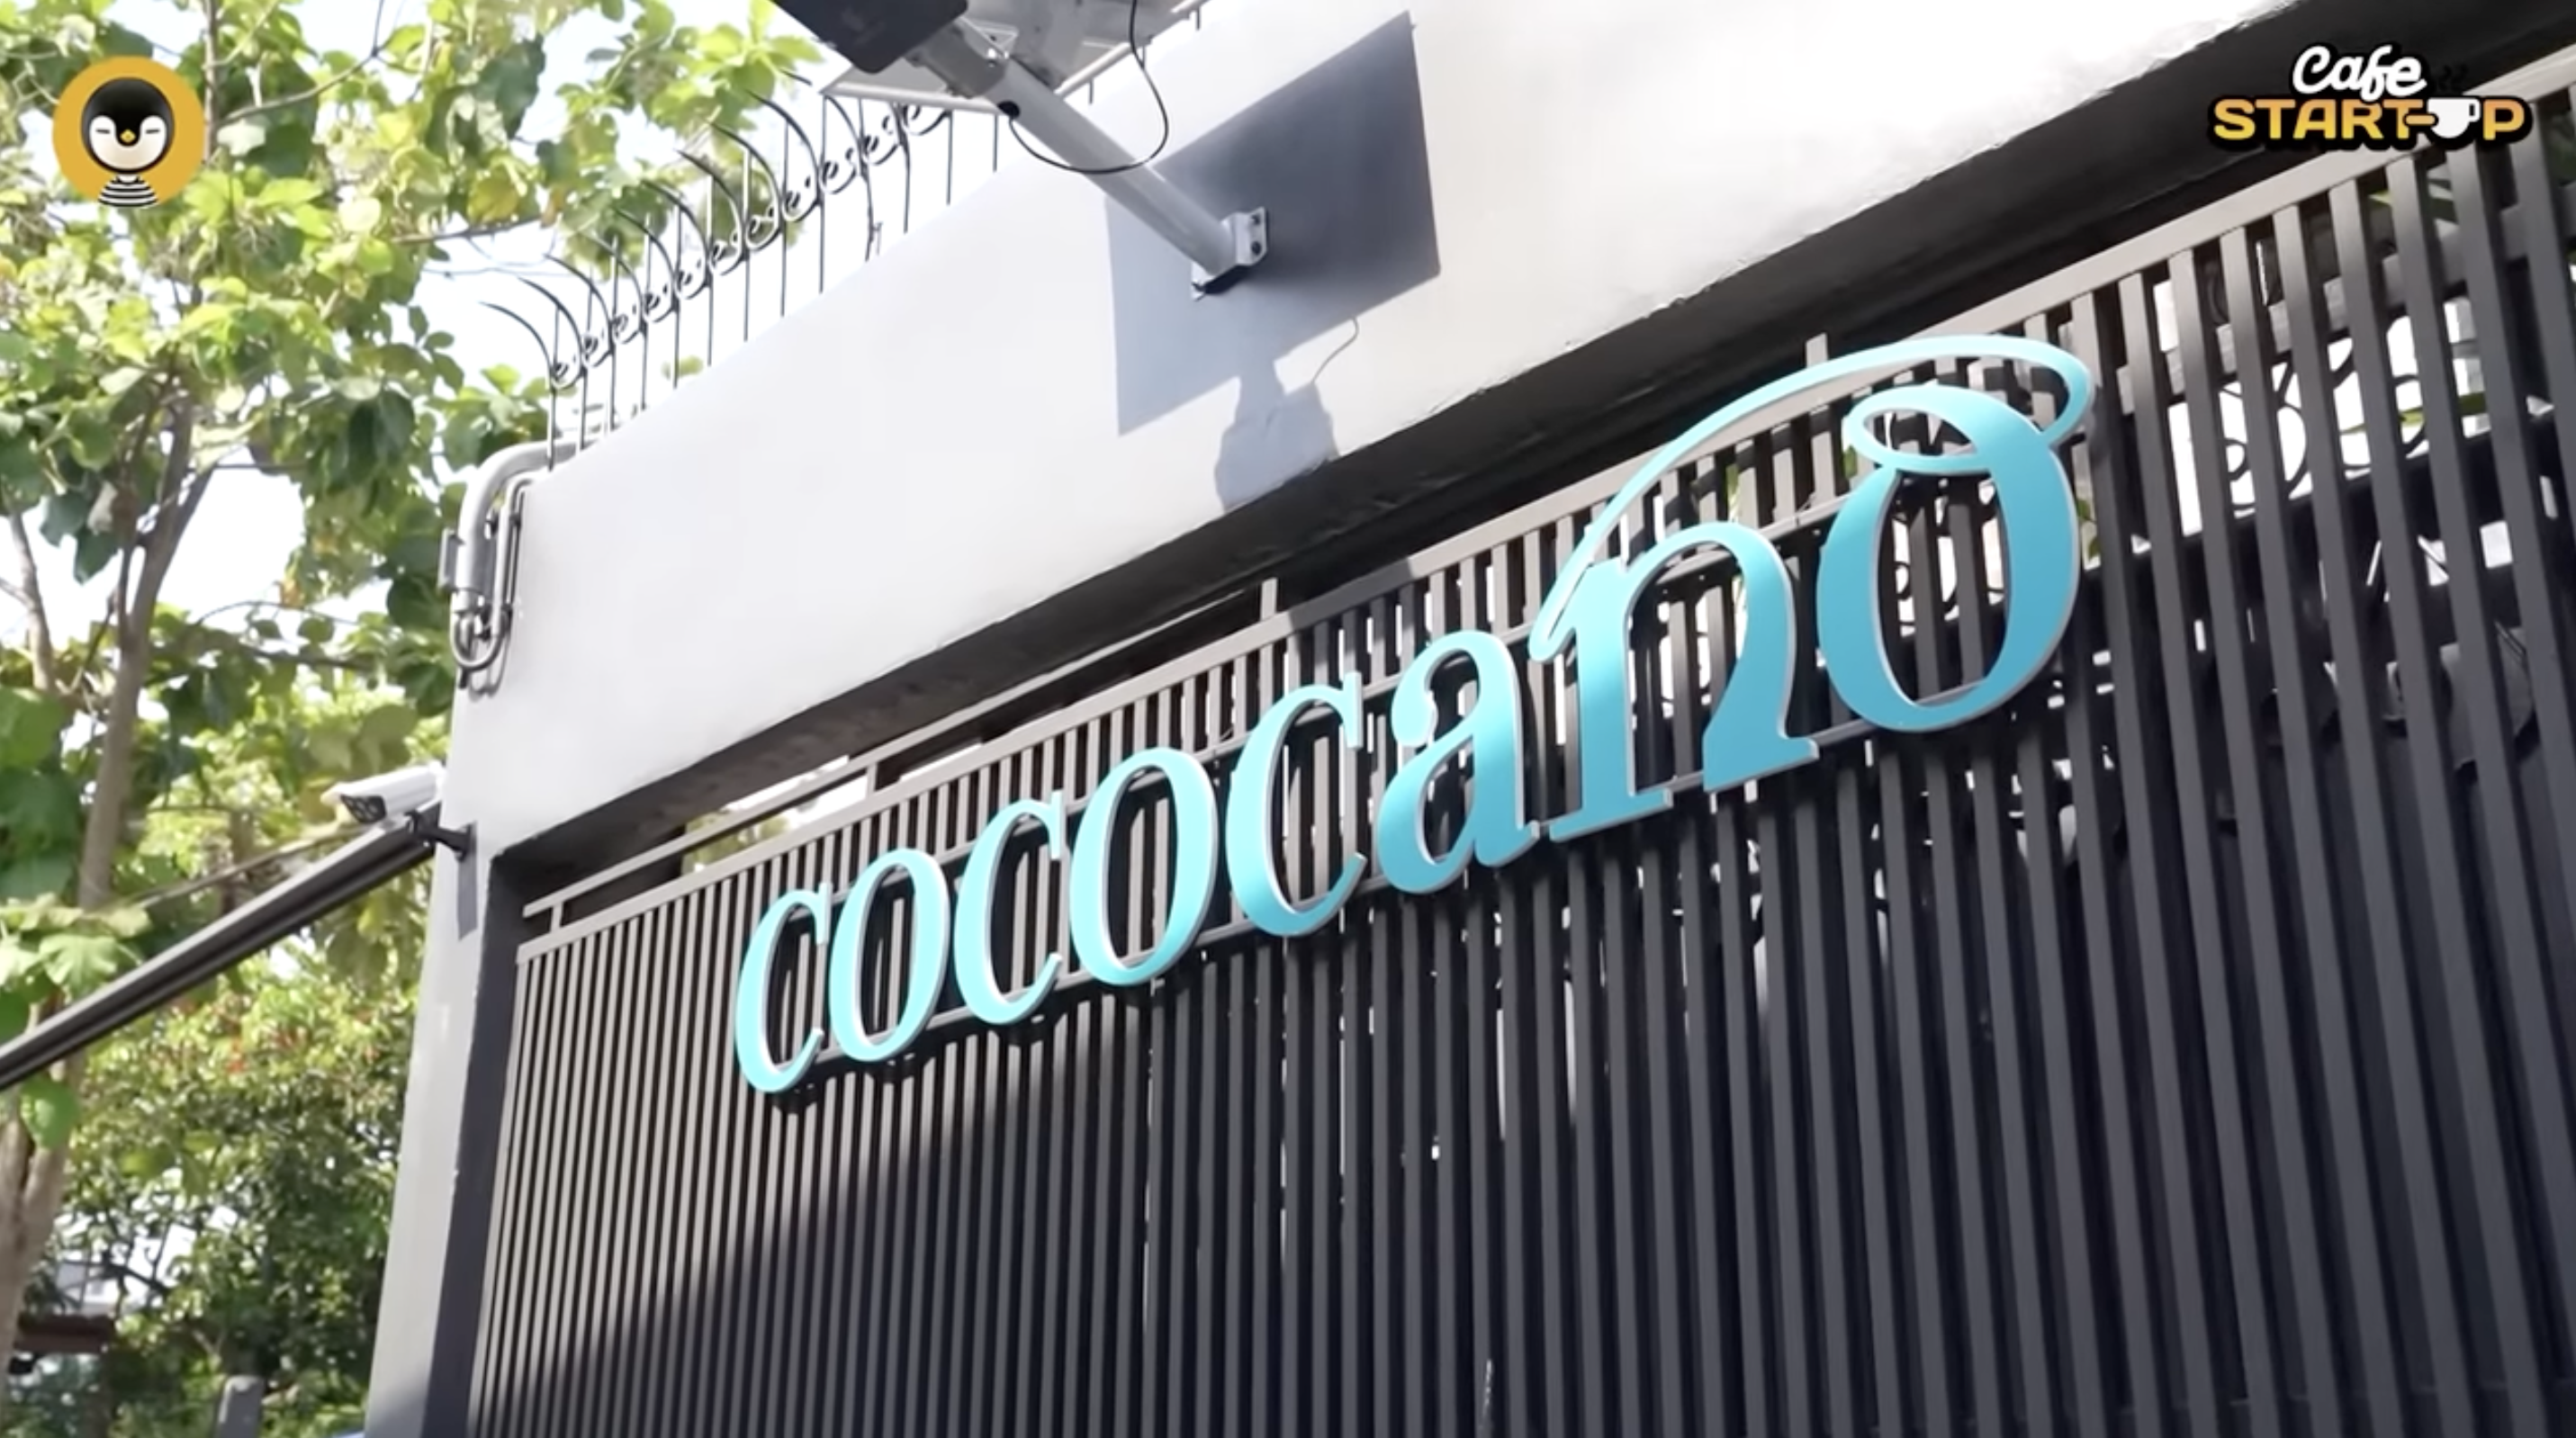 Cafe Cococano ร้านกาแฟคิดต่าง โดดเด่นและมีจุดยืน จนลูกค้ากลับมาซื้อซ้ำ